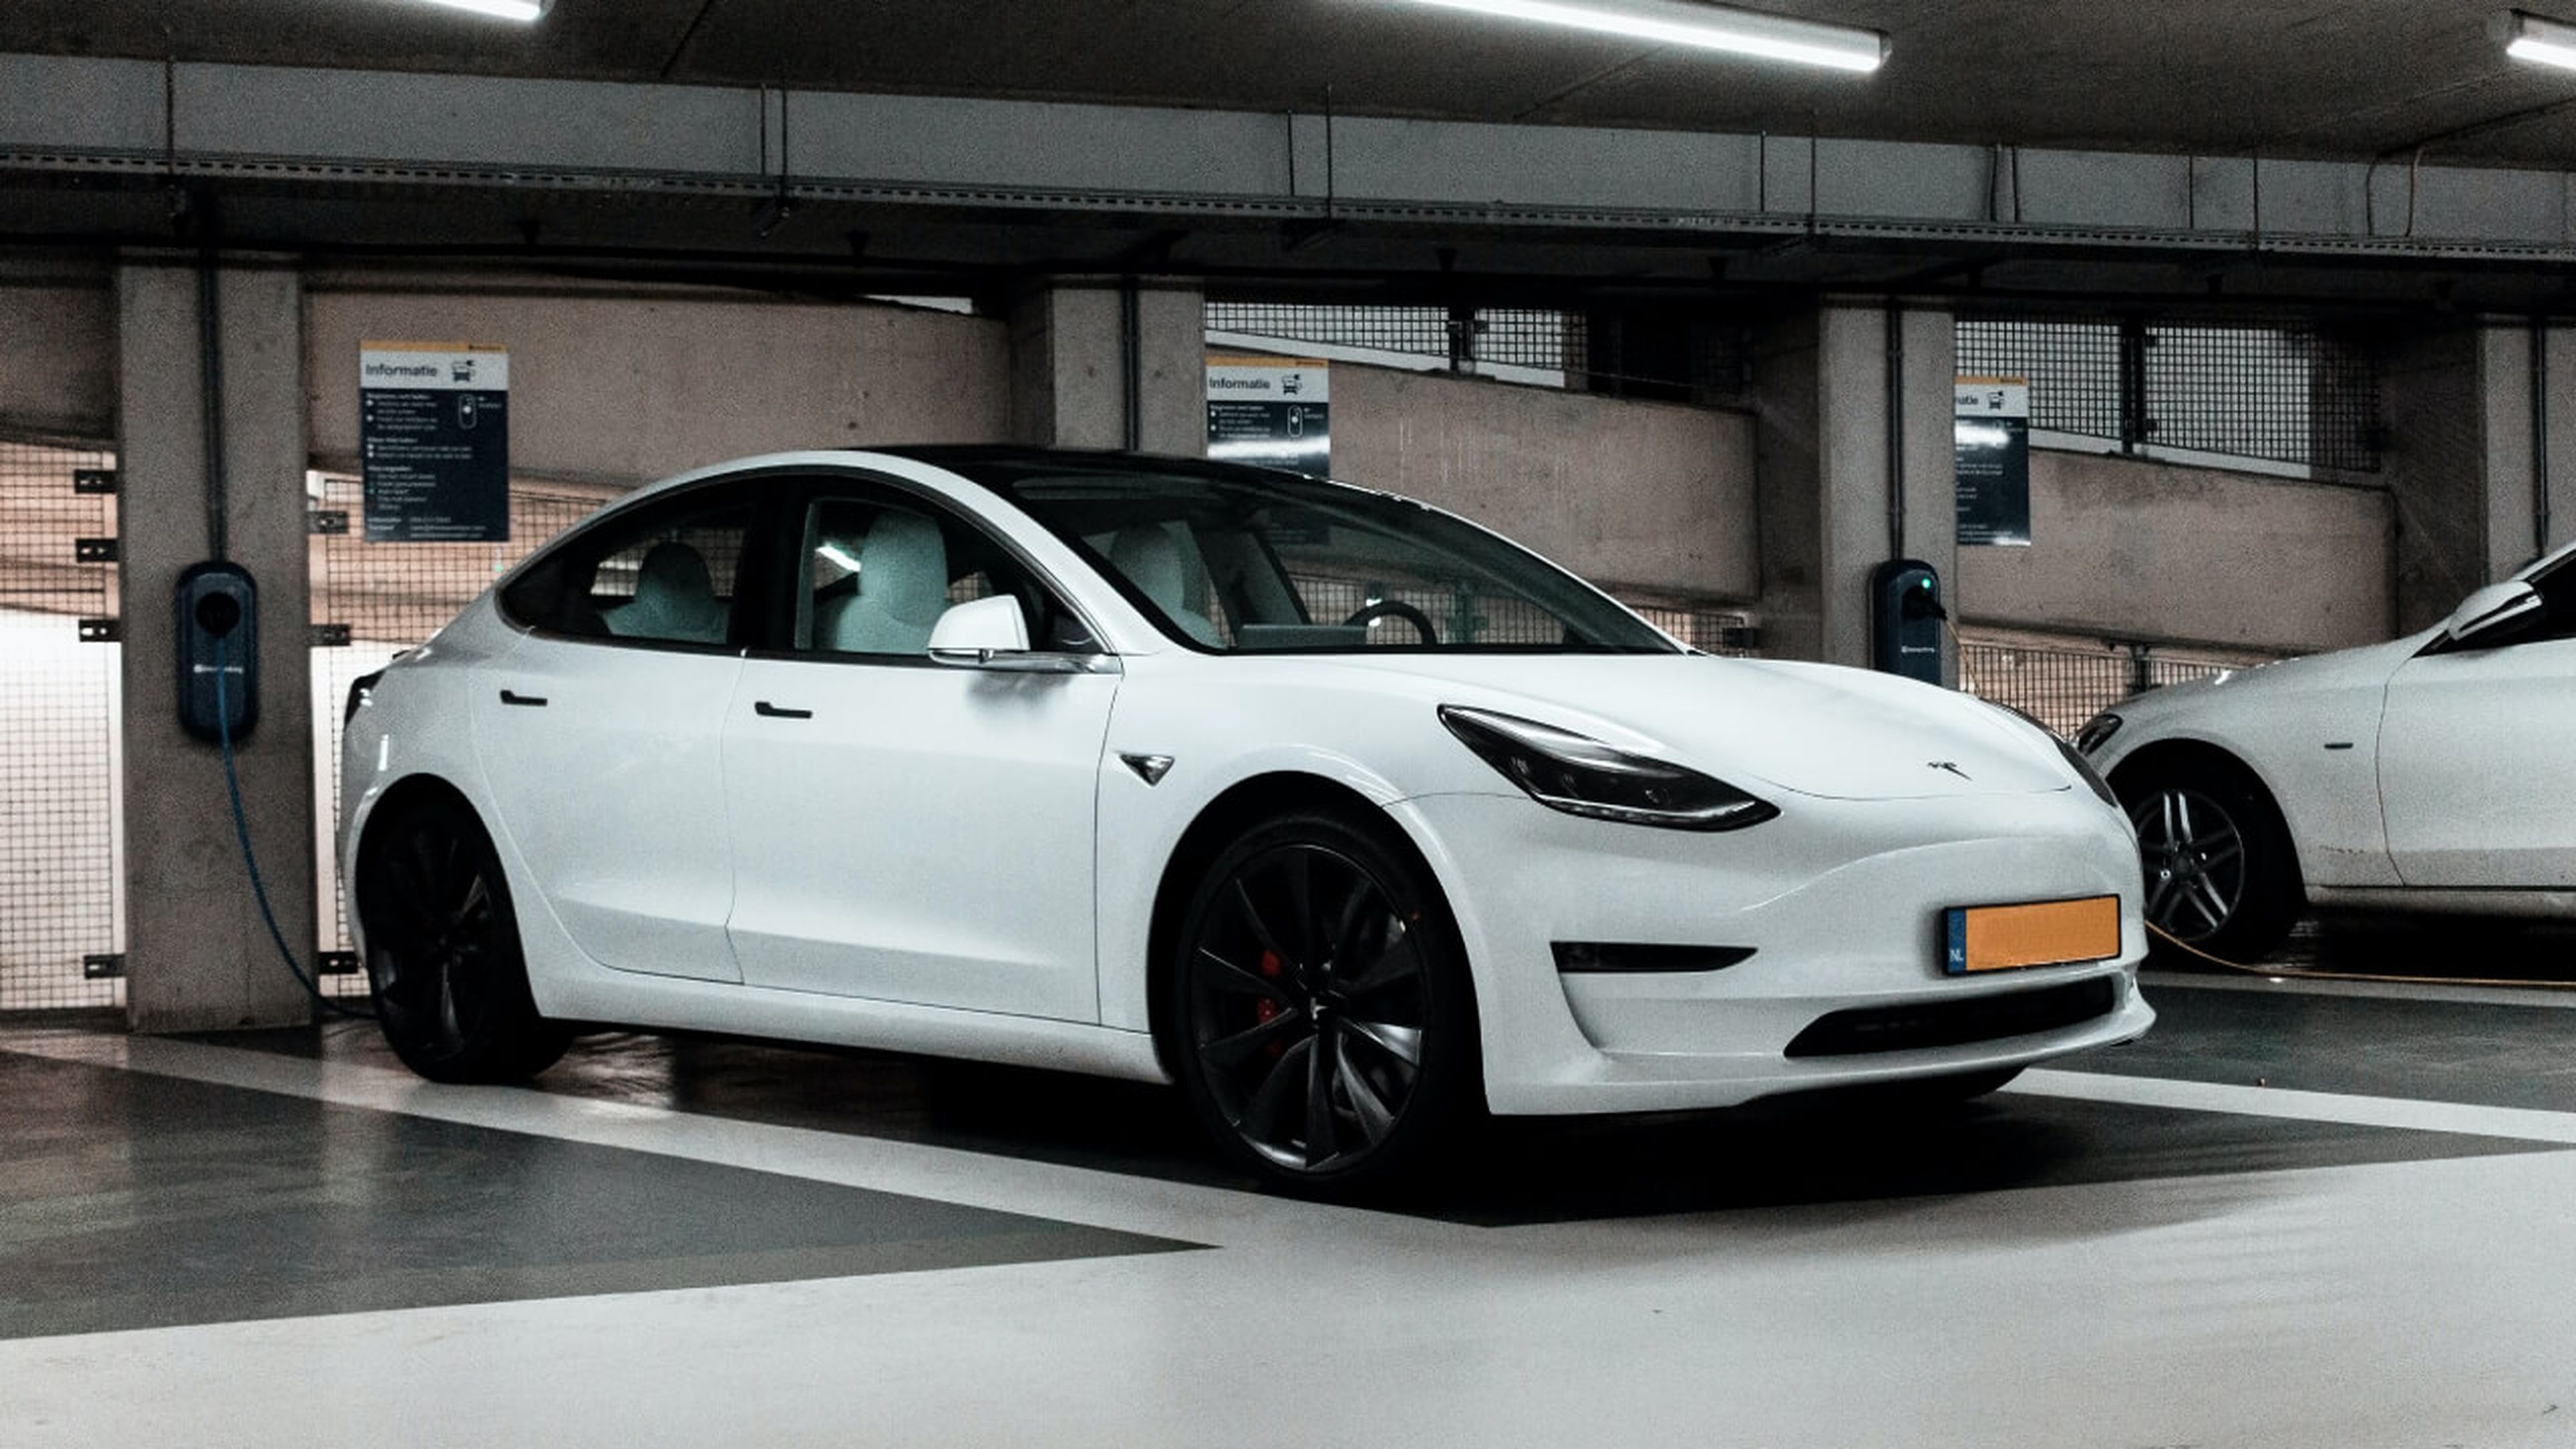 Alemania prohíbe los coches eléctricos en los aparcamientos subterráneos